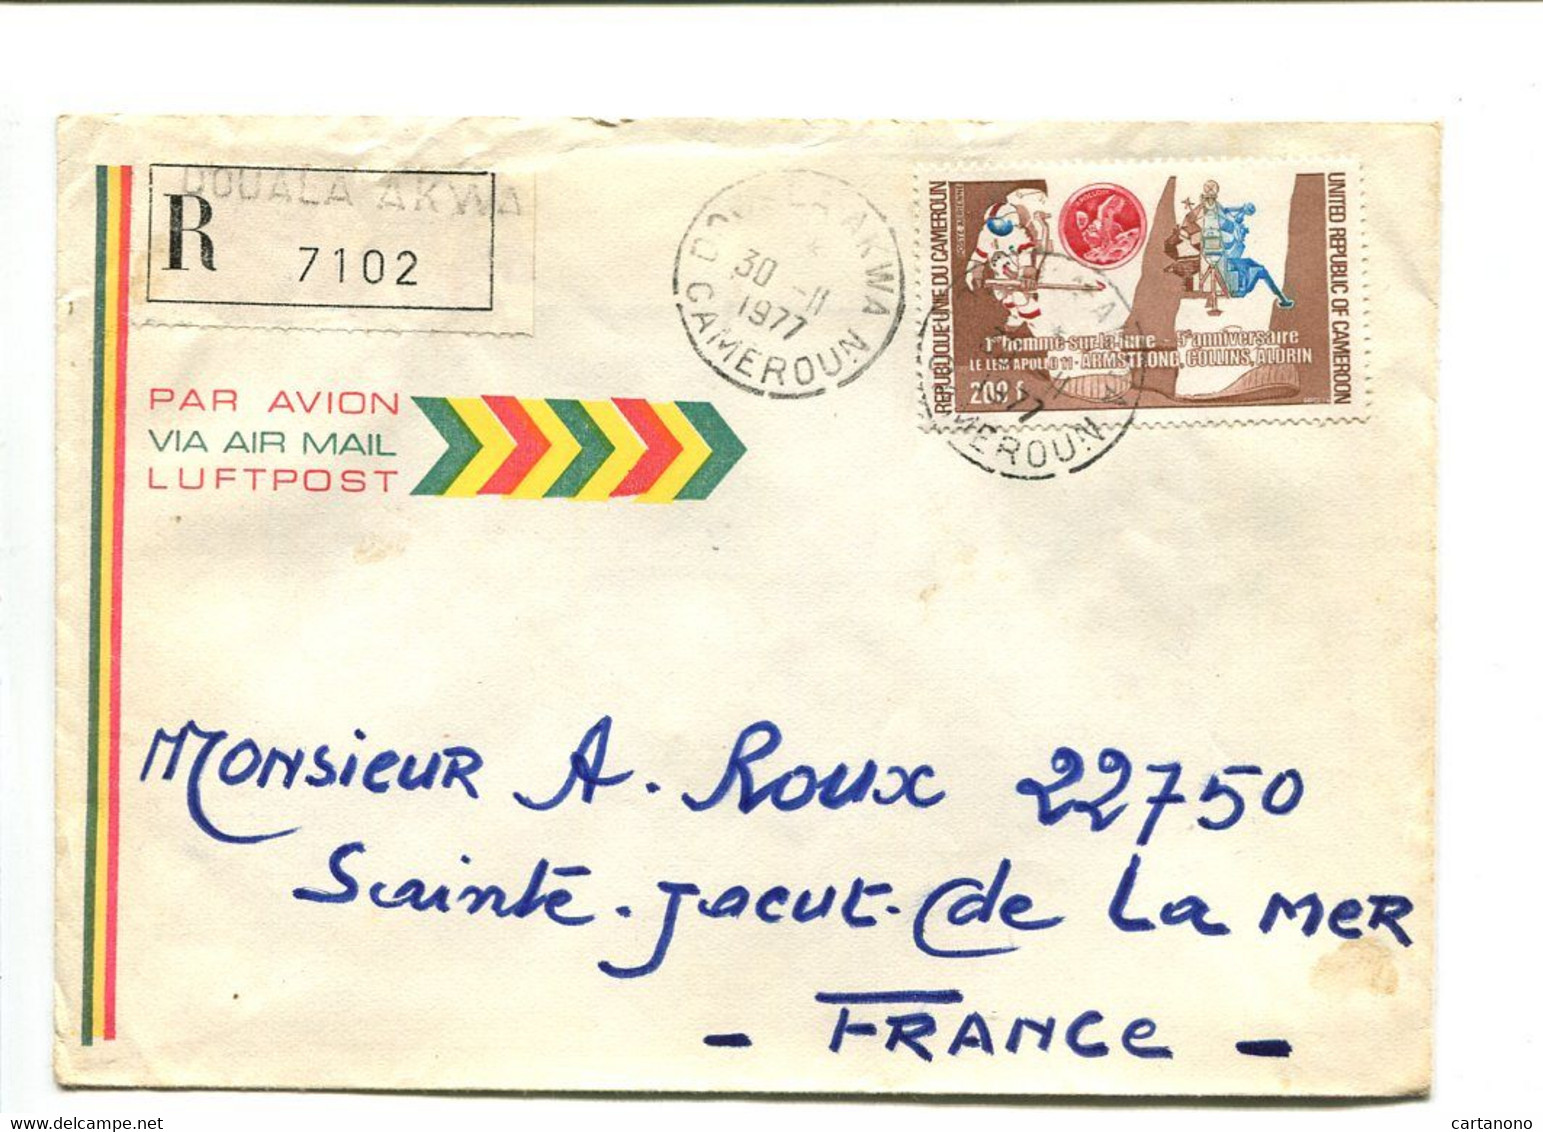 CAMEROUN Douala Akwa 1977 -  Affranchissement Seul Sur Lettre Recommandée Par Avion - Astronautes / Lune - Cameroun (1960-...)